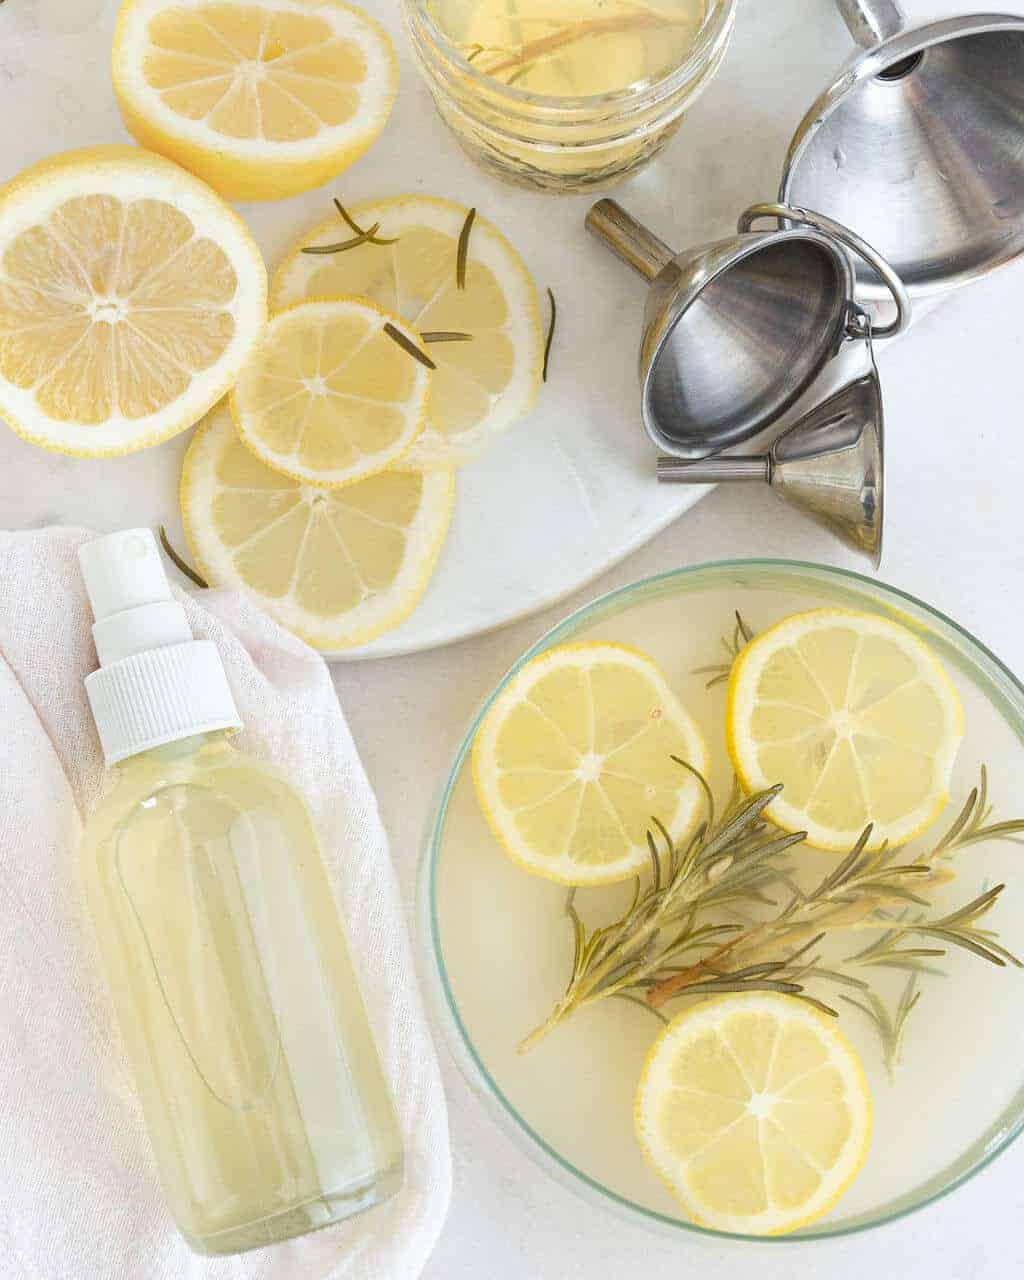 Lemon Rosemary room spray in a bottle next to sliced lemons.